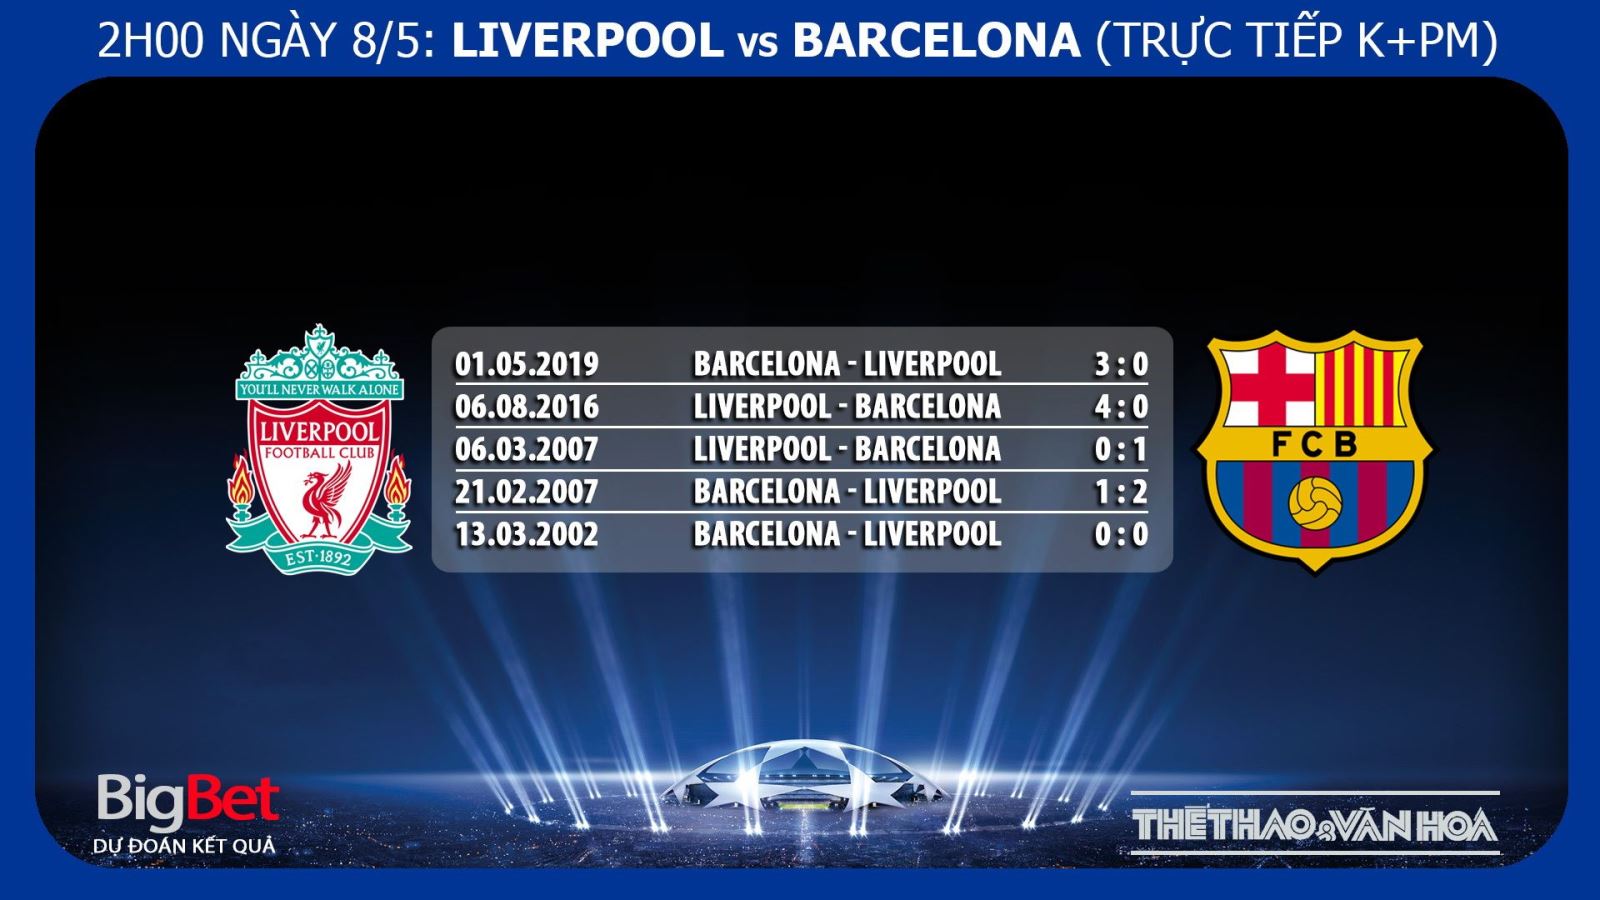 Liverpool vs Barcelona, Liverpool vs barca, nhận định bóng đá Liverpool vs Barca, kèo bóng đá, truc tiep bong da, trực tiếp bóng đá, lịch thi đấu C1, cúp c1, Barcelona, Liverpool